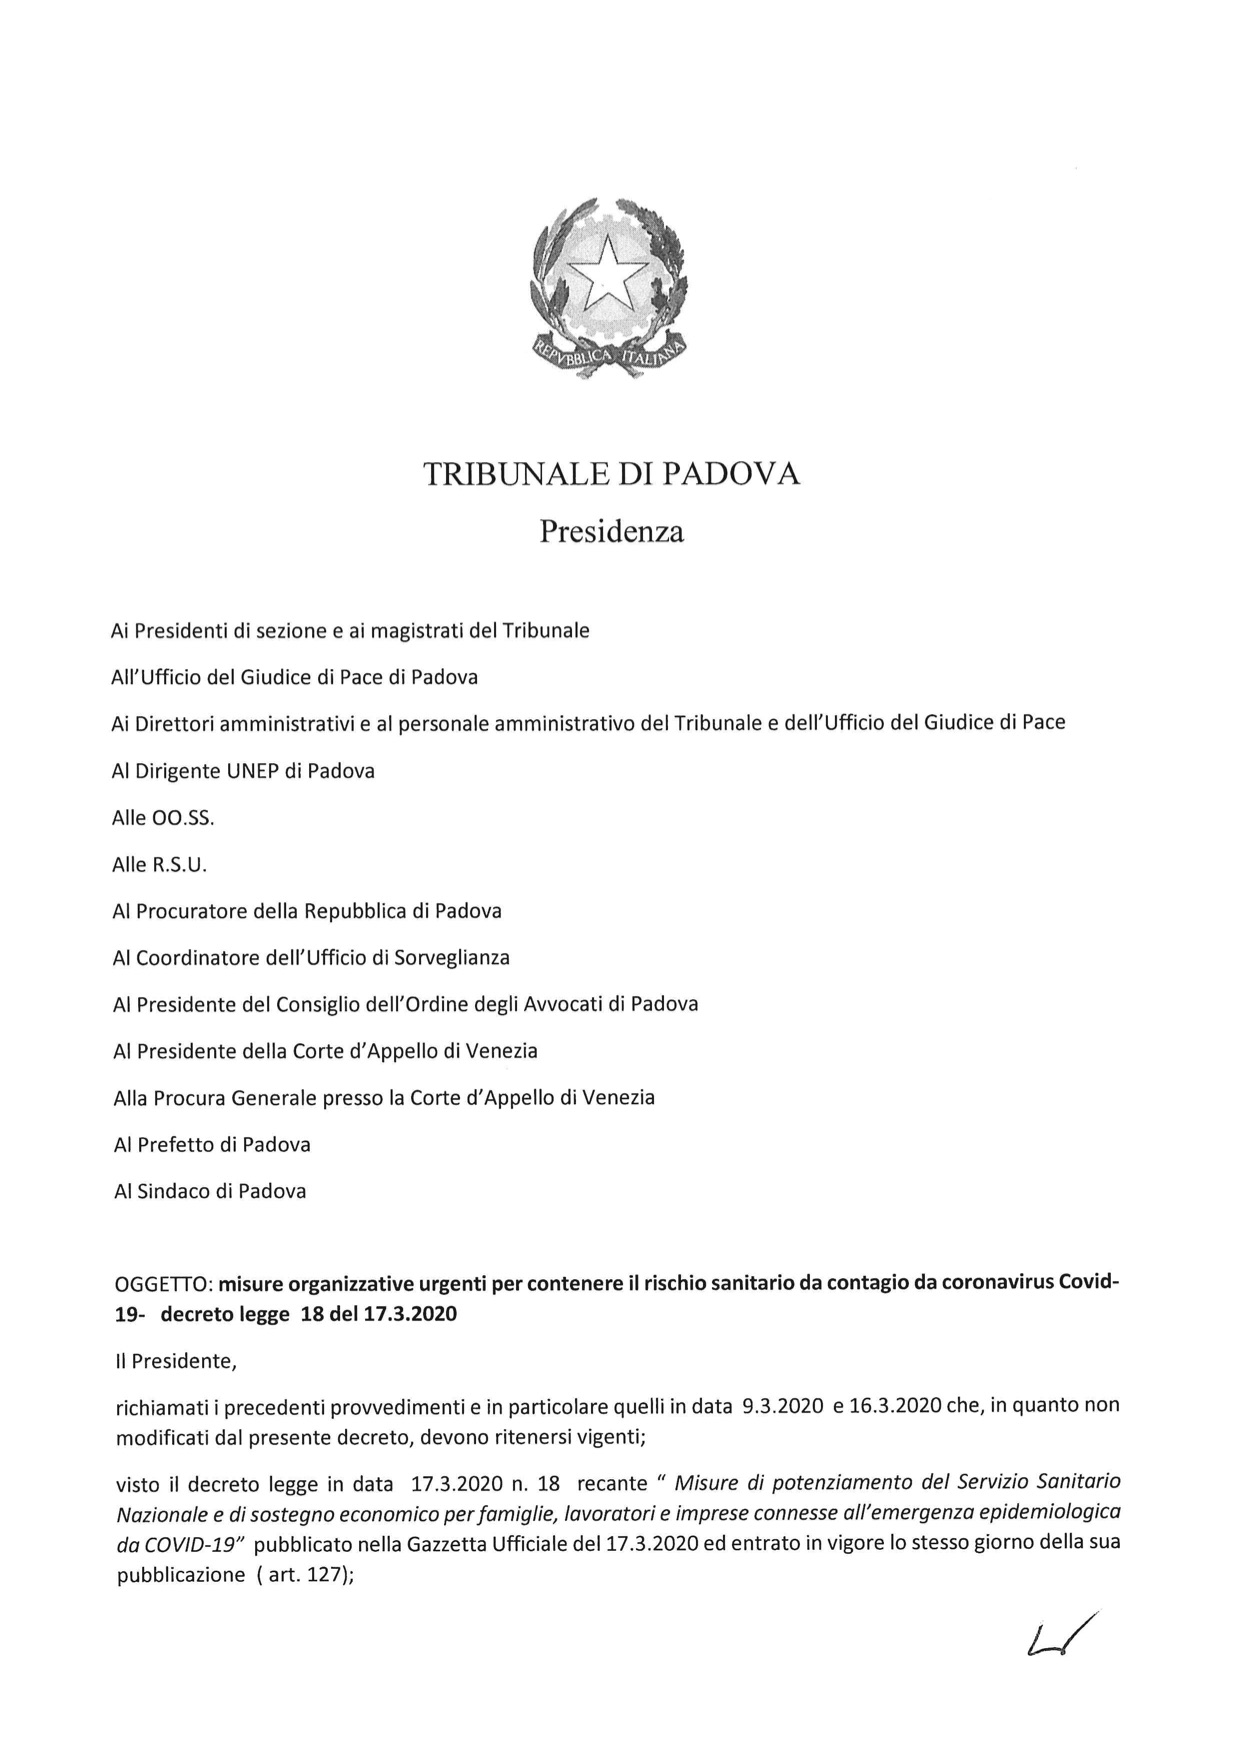 Provvedimento Presidente Tribunale di Padova 19.03.2020 - Misure organizzative urgenti per contenere il rischio sanitario da contagio da coronavirus Covid-19 decreto legge 18 del 17.3.2020